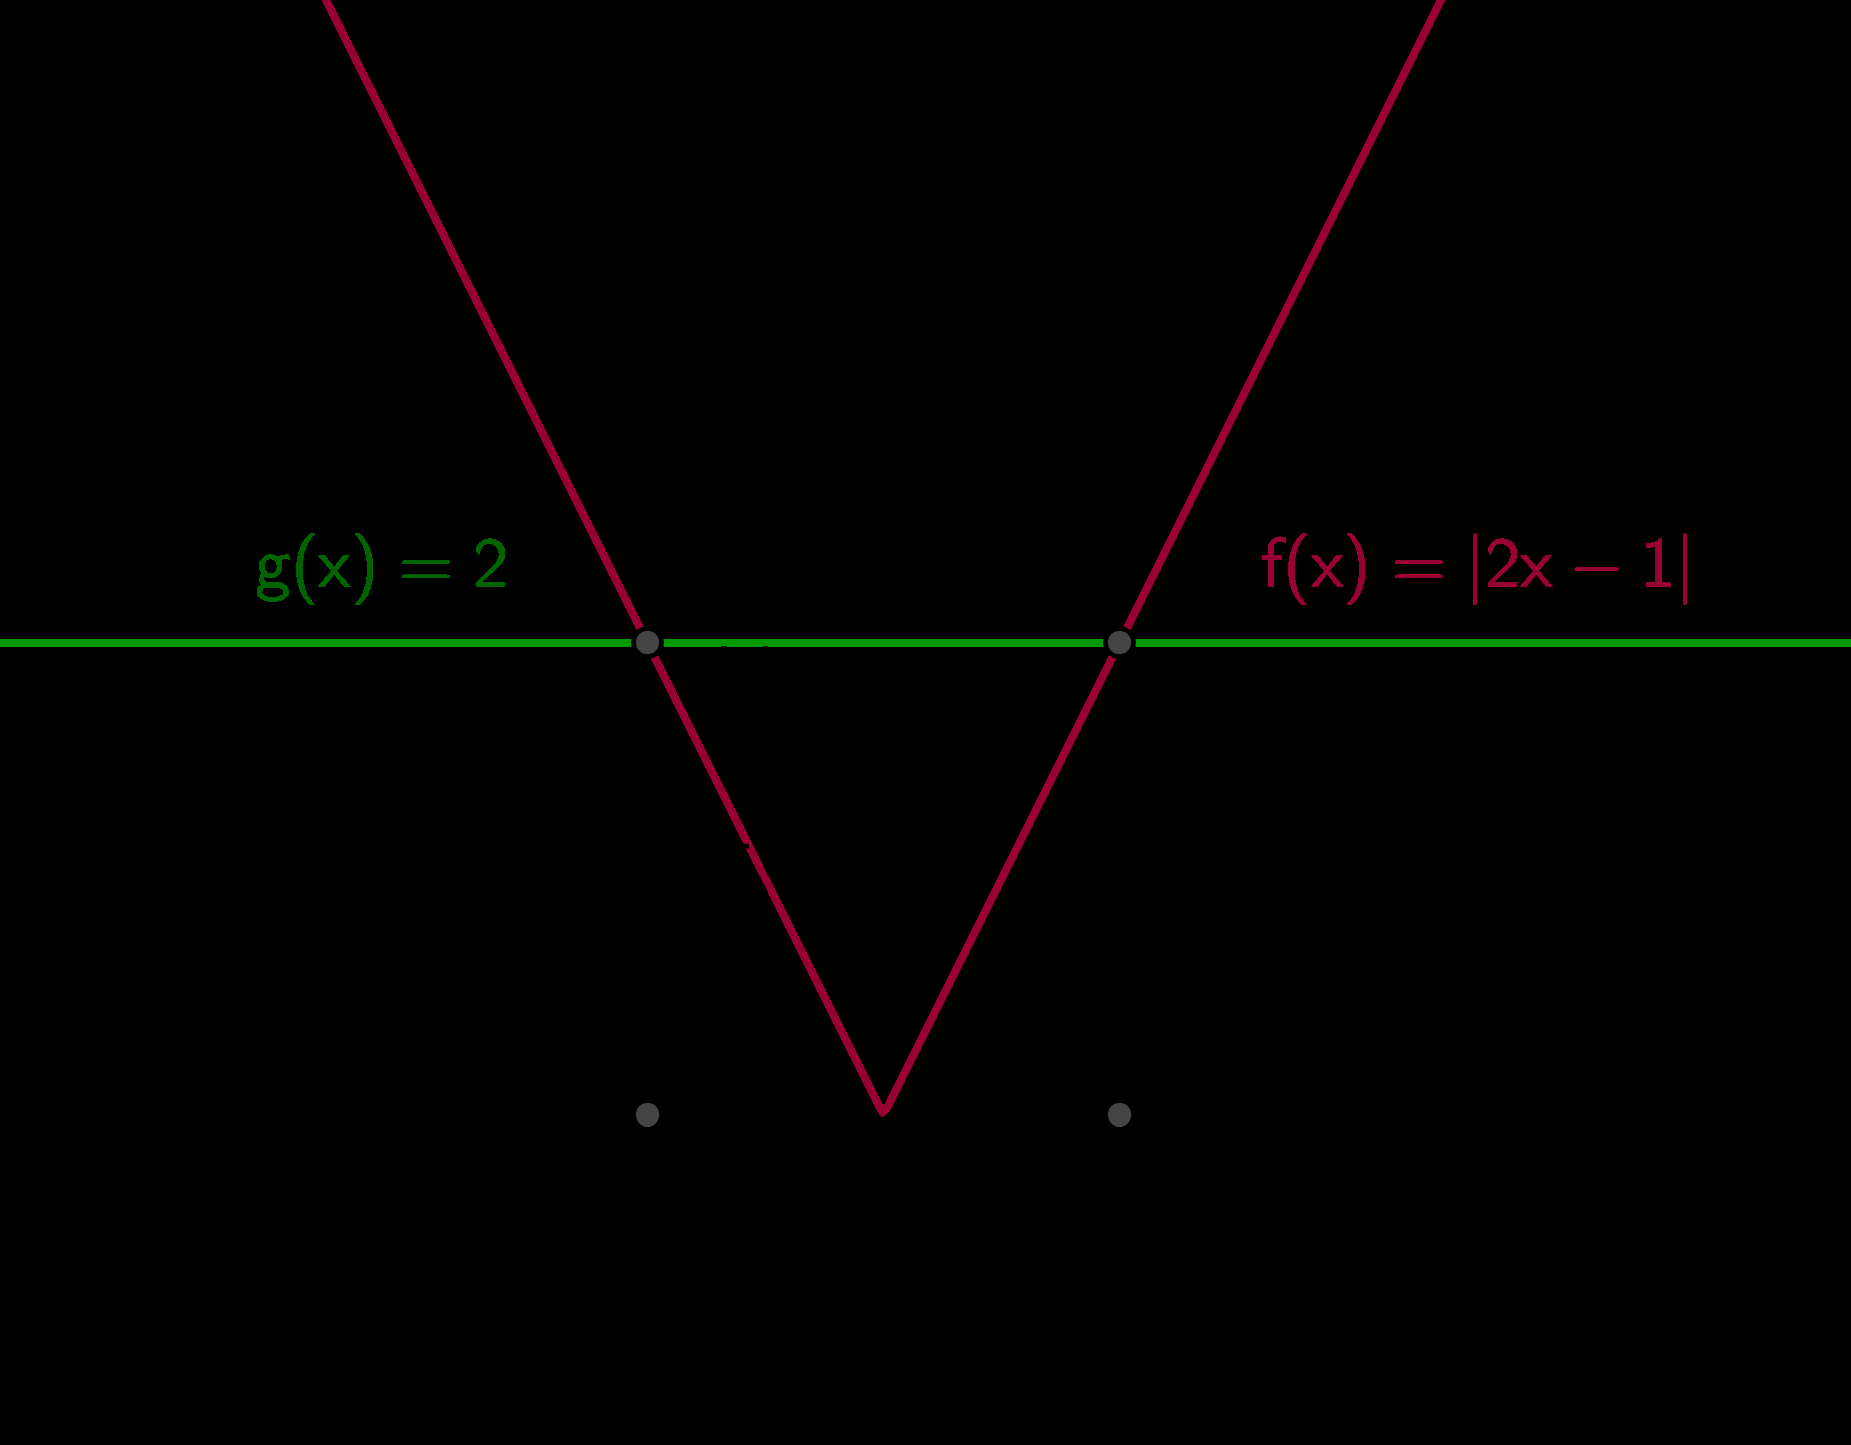 KAPITEL 2. GLEICHUNGEN, UNGLEICHUNGEN, BETRÄGE 66 2 x = 3 2. 2. Fallunterscheidung: 2x 1 0 x 1 und 2x 1 = 2 2 x = 3 2. Weil 3 1 2 2 ist, ist x 1 = 3 2. 2x 1 < 0 x < 1 2 und 2x 1 = 2 x 2 = 1 2.